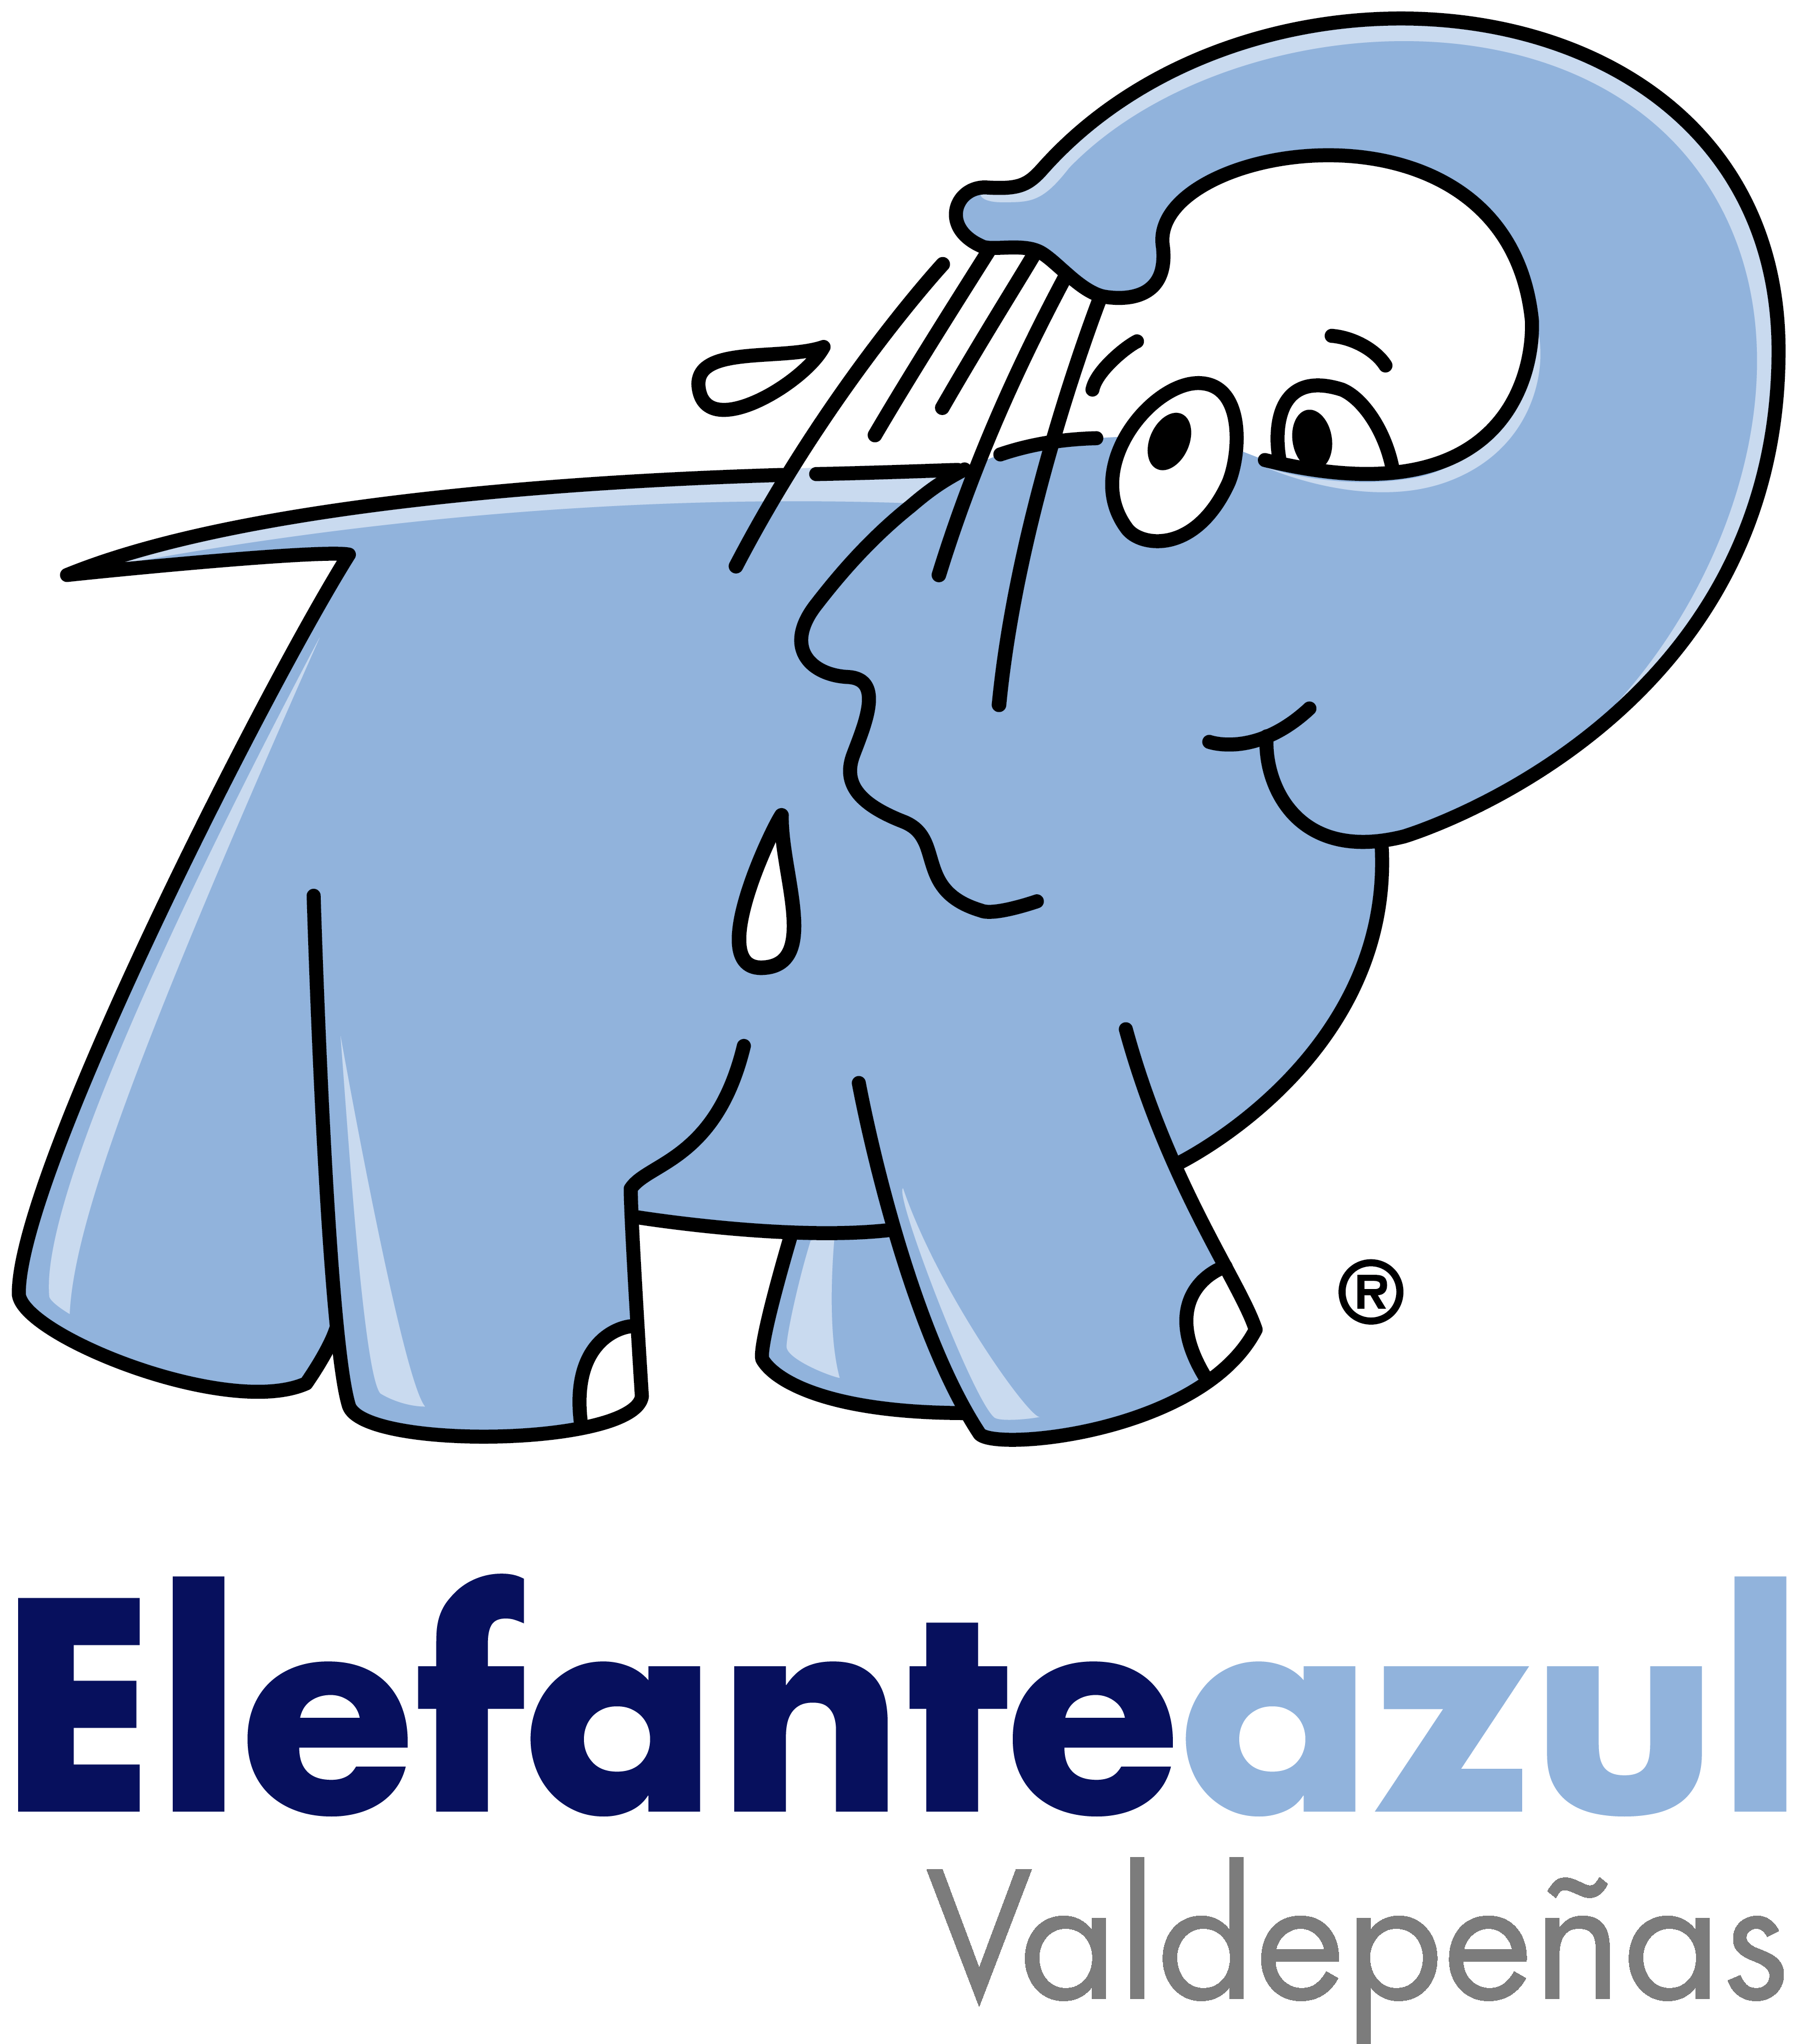 Logo De Elefante Azul Valdepeã±as - Elephant Bleu (3279x3728)